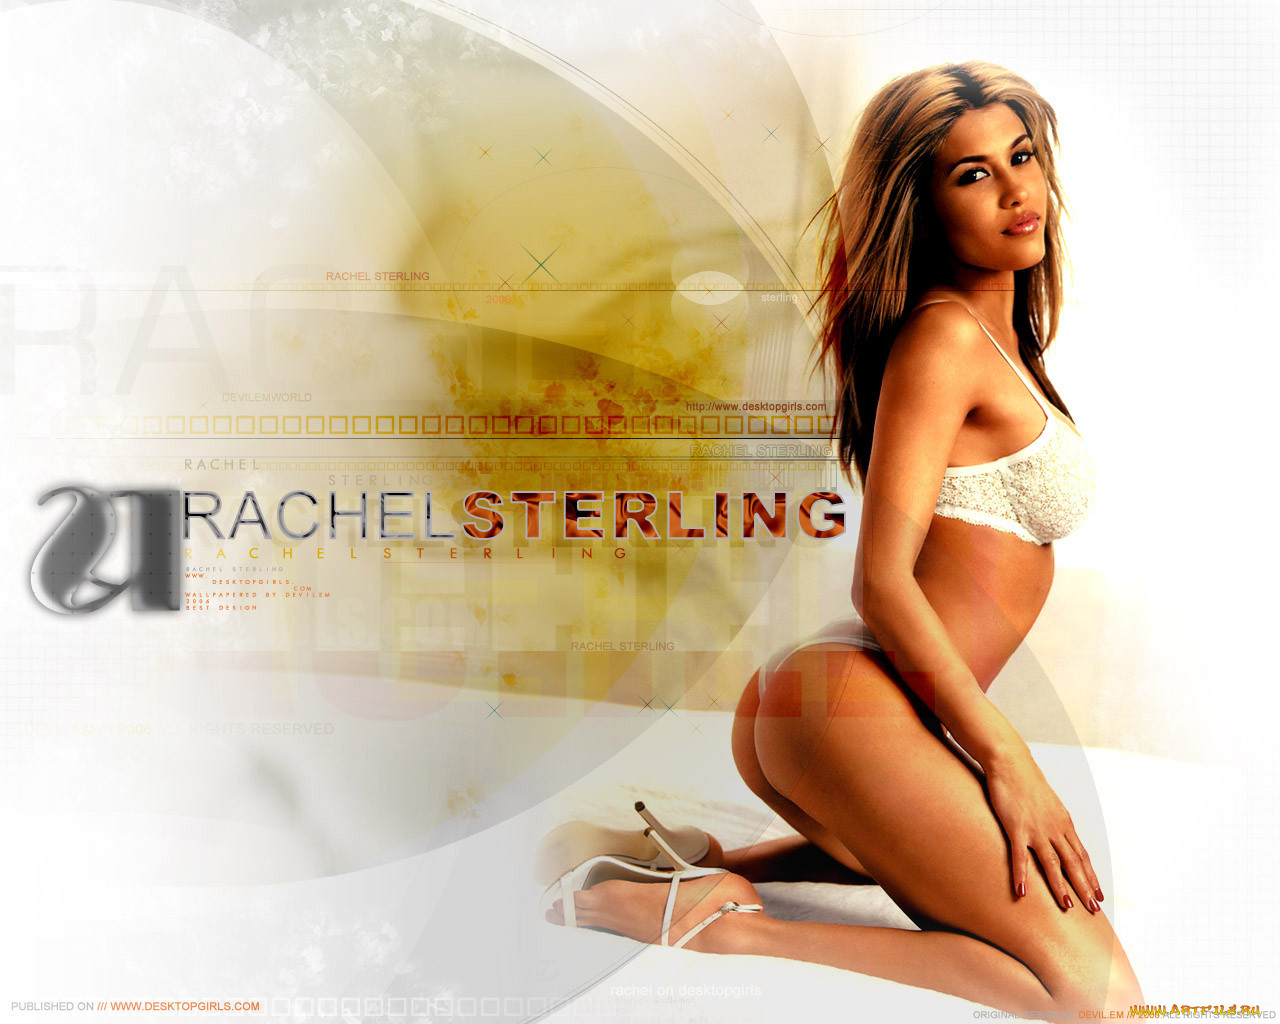 Rachel Sterling, 